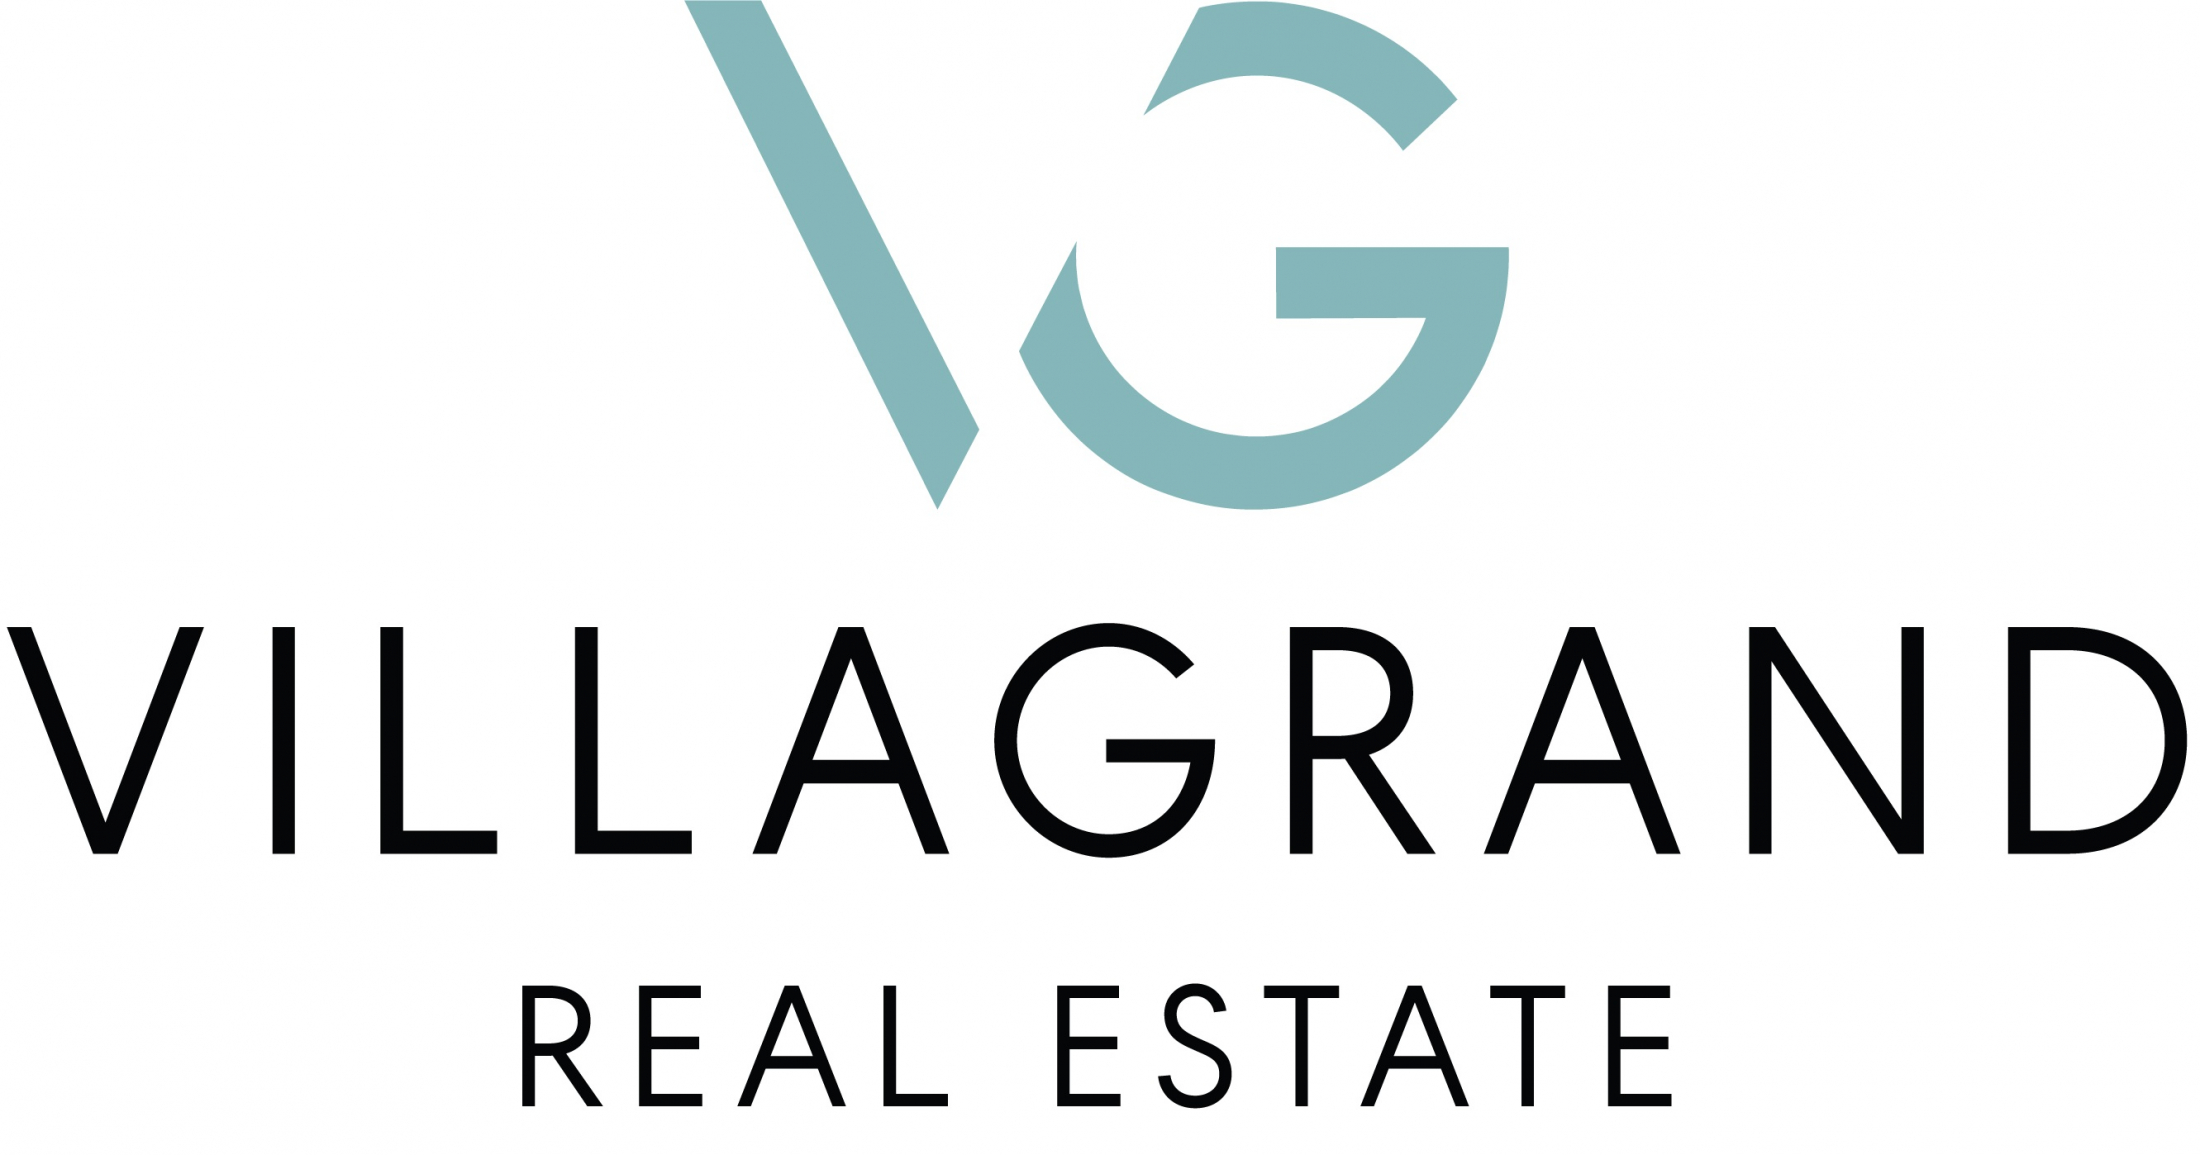 VILLAGRAND Real Estate